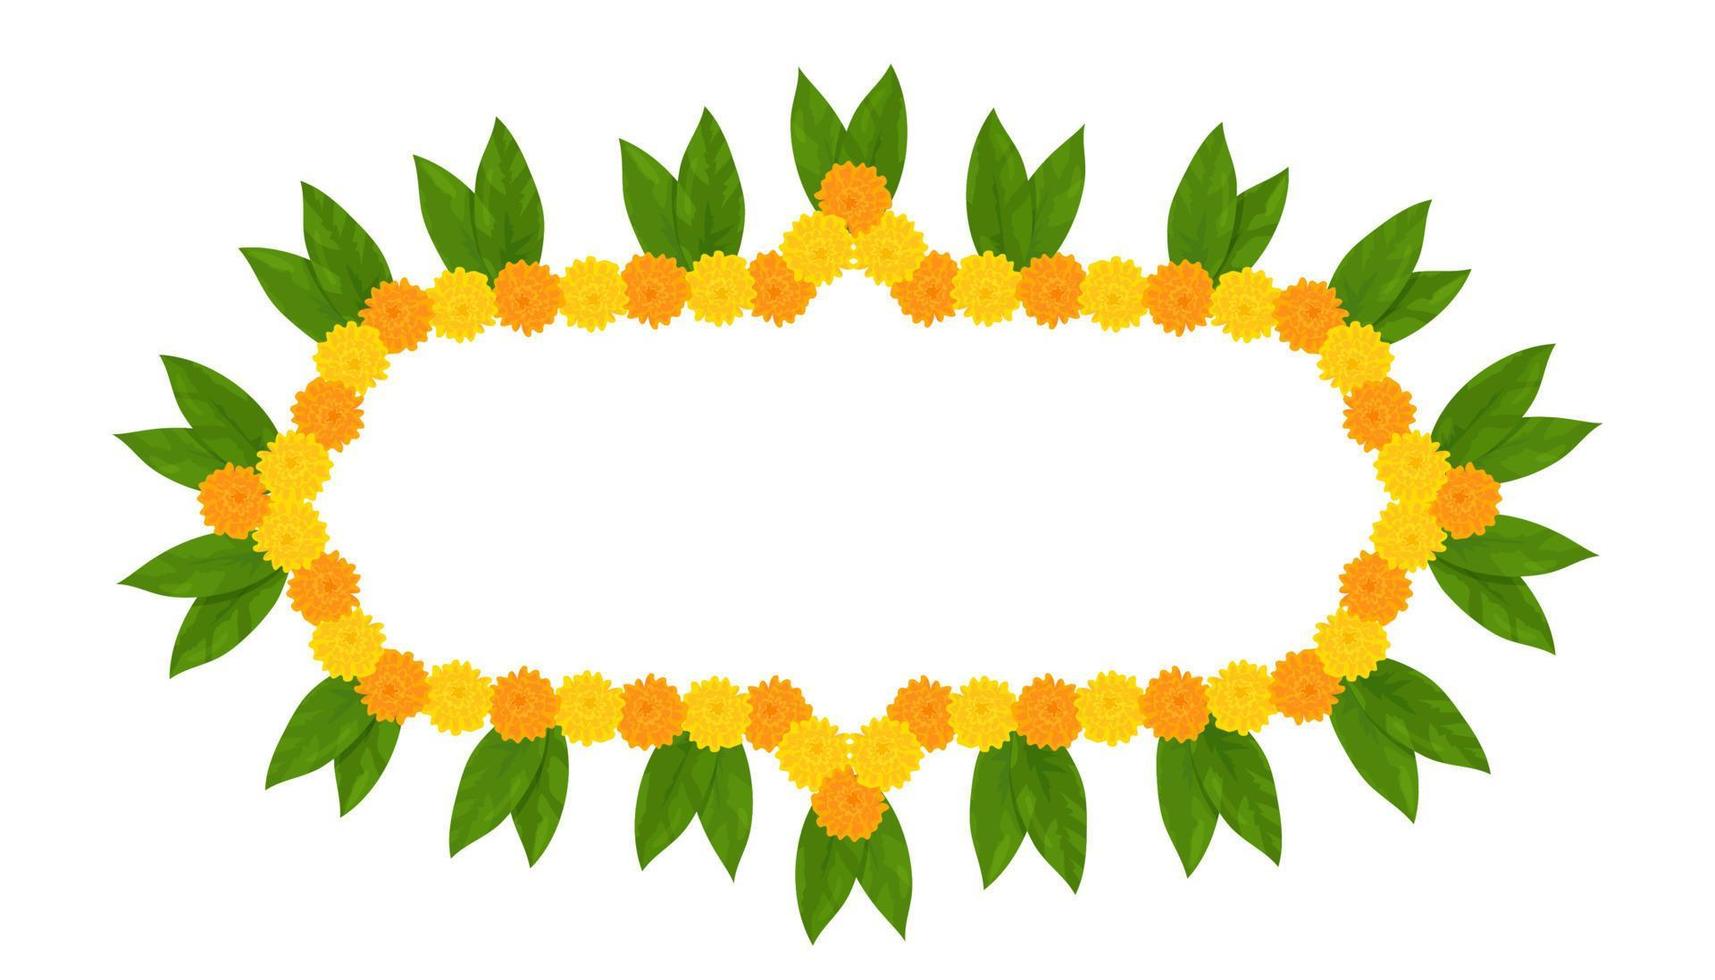 cadre de guirlande de fleurs indiennes traditionnelles avec des fleurs de souci et des feuilles de mangue. décoration pour les fêtes hindoues indiennes. illustration vectorielle isolée sur fond blanc. vecteur